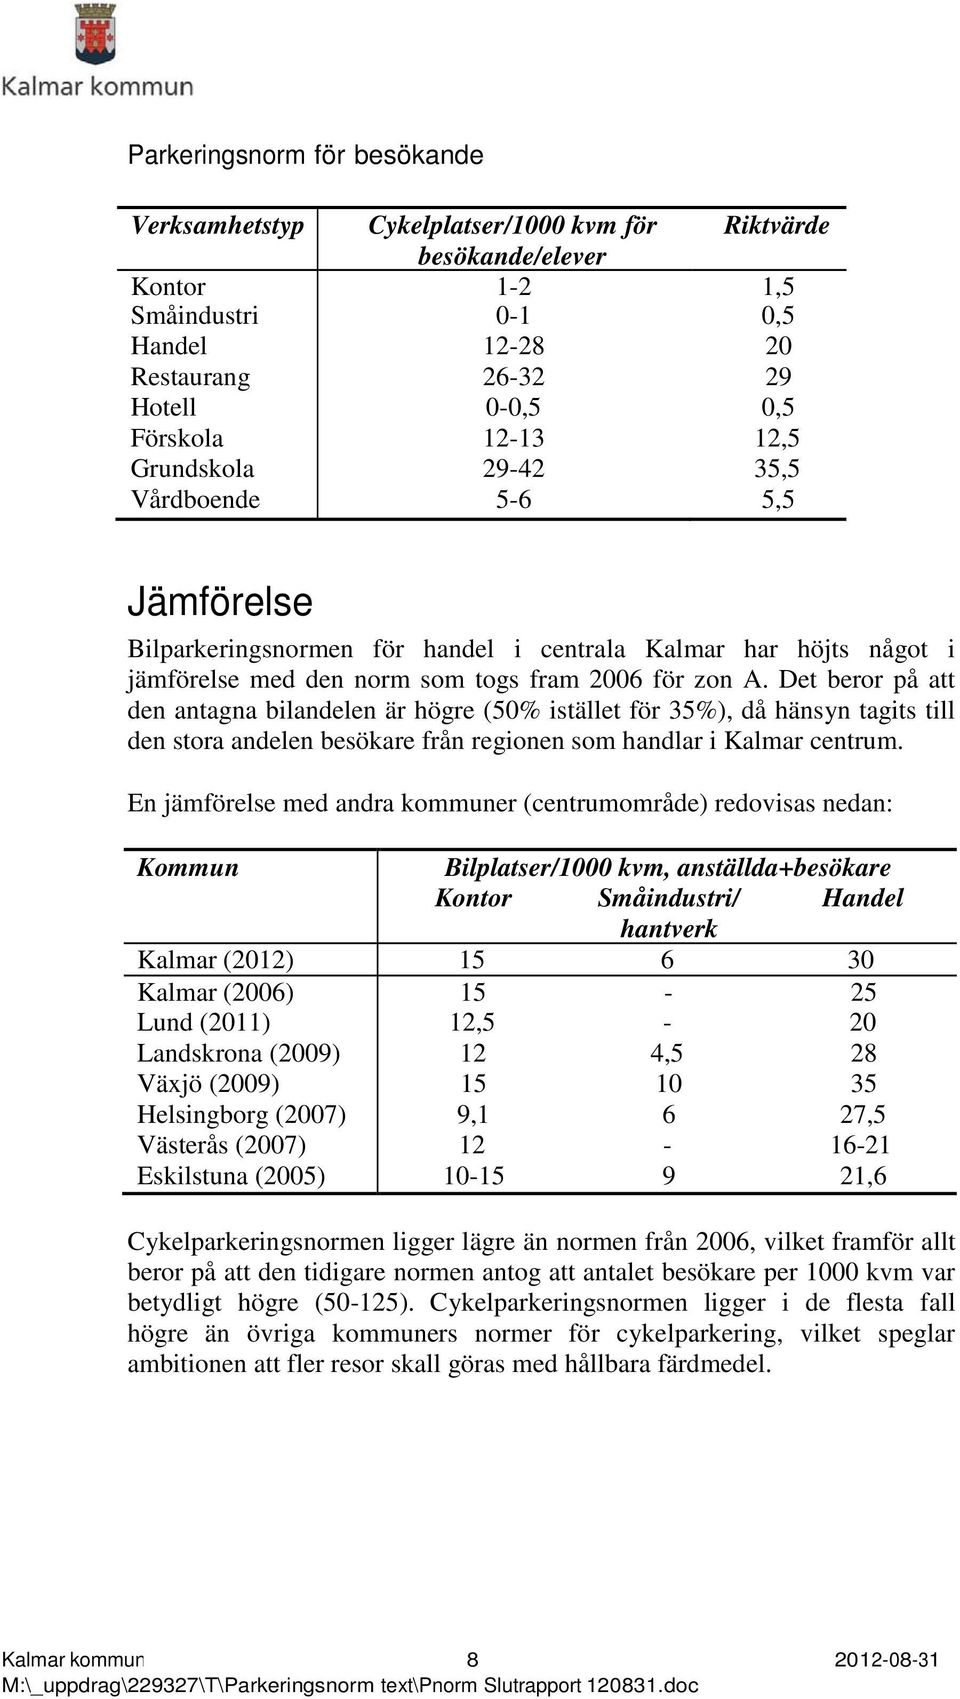 Det beror på att den antagna bilandelen är högre (50% istället för 35%), då hänsyn tagits till den stora andelen besökare från regionen som handlar i Kalmar centrum.